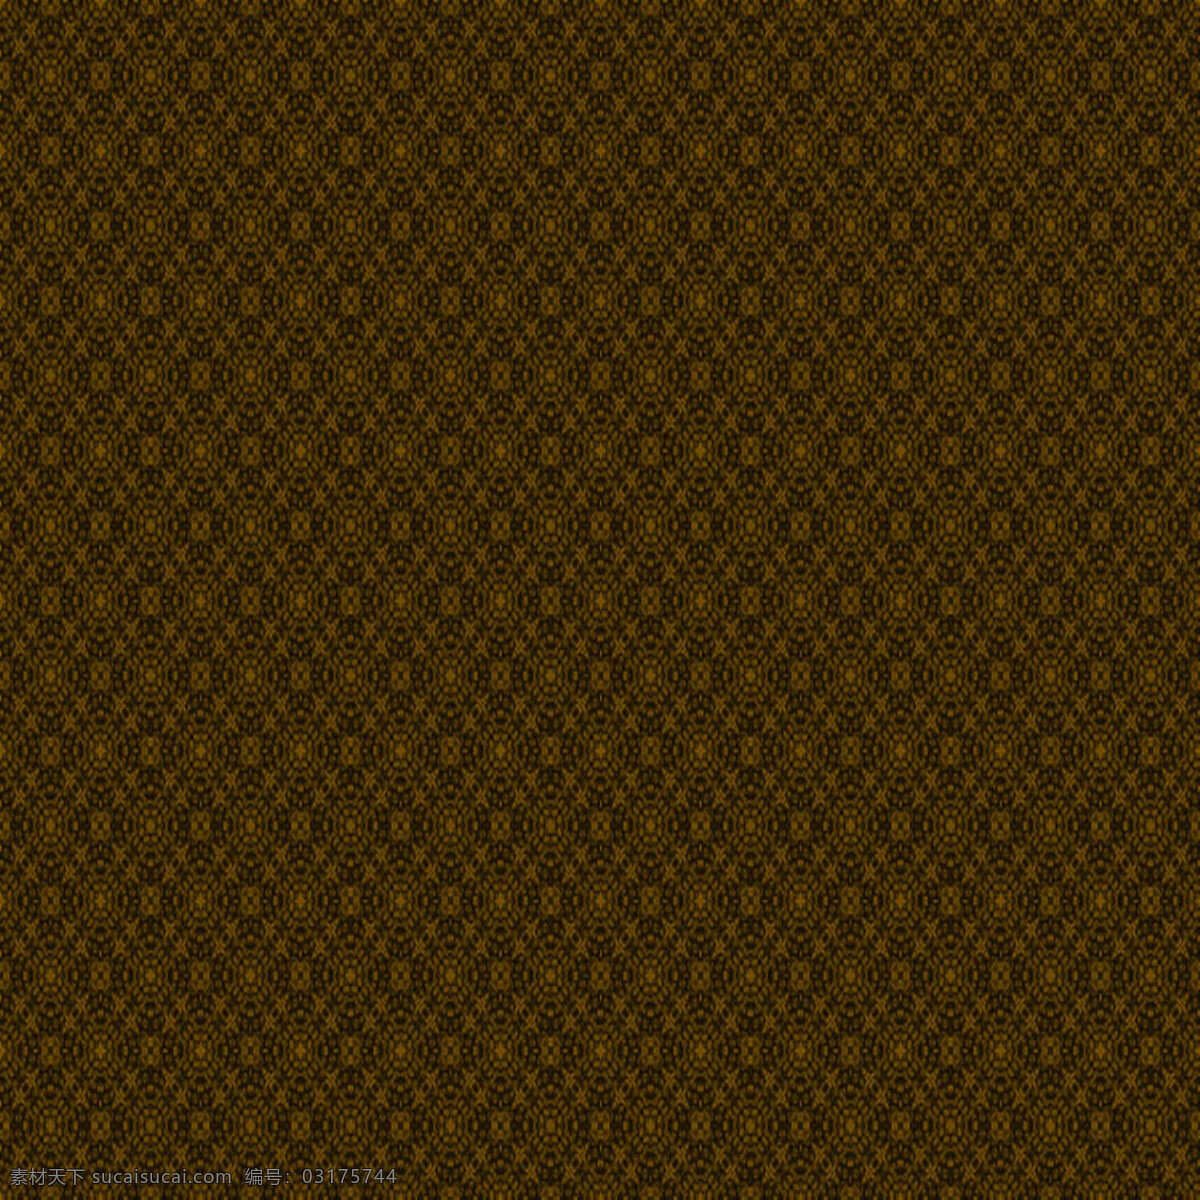 褐色 密集 纹理 纹理素材 纹路背景 背景图片